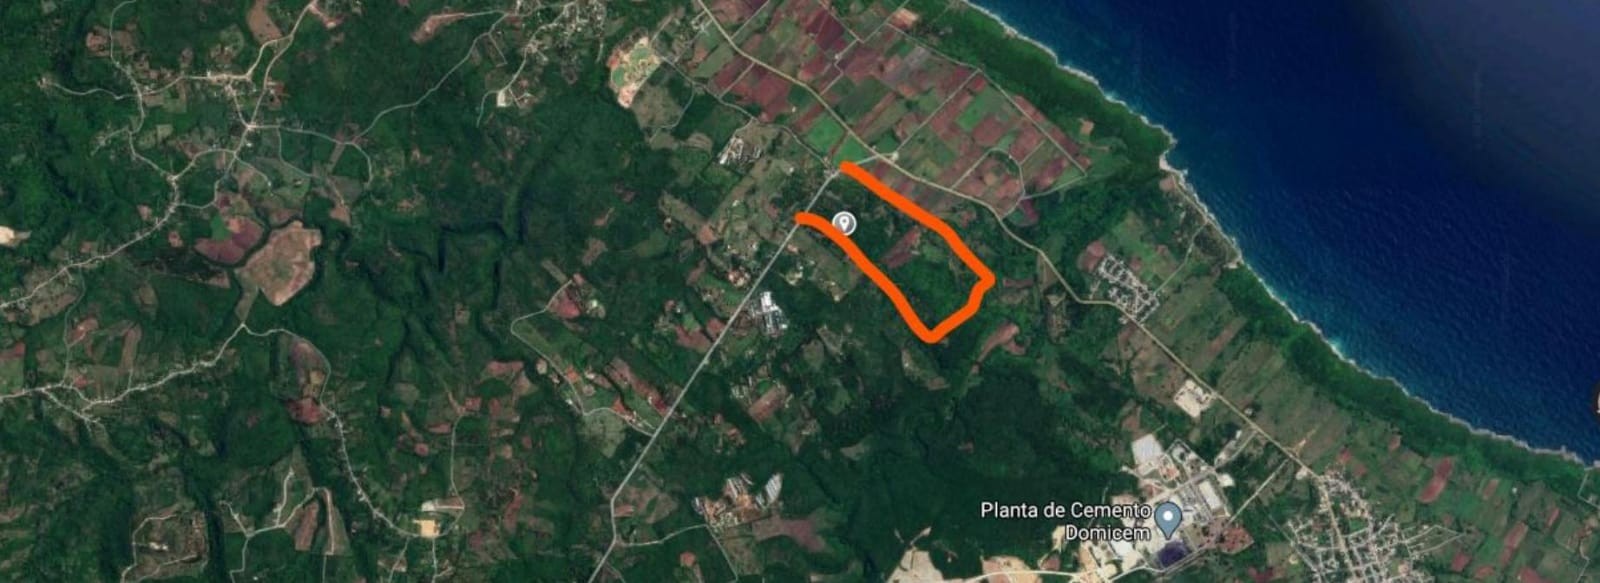 solares y terrenos - Información Sobre solares Localizados en Palenque, San Cristóbal
 3